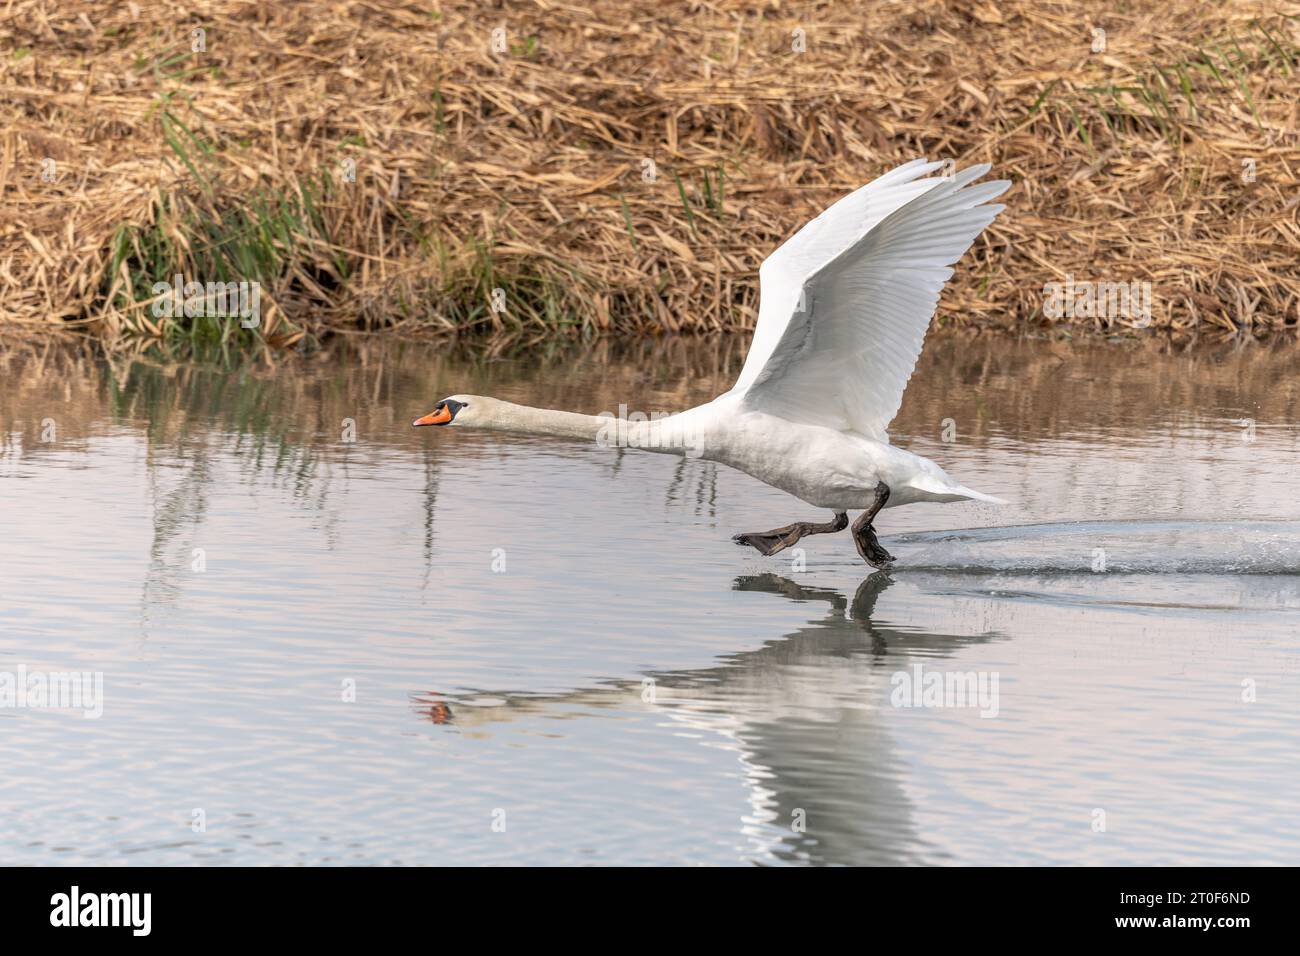 Muet Swan (Cygnus olor) décollant en vol au-dessus de l'eau. Bas-Rhin, Collectivite européenne d'Alsace, Grand est, France. Banque D'Images